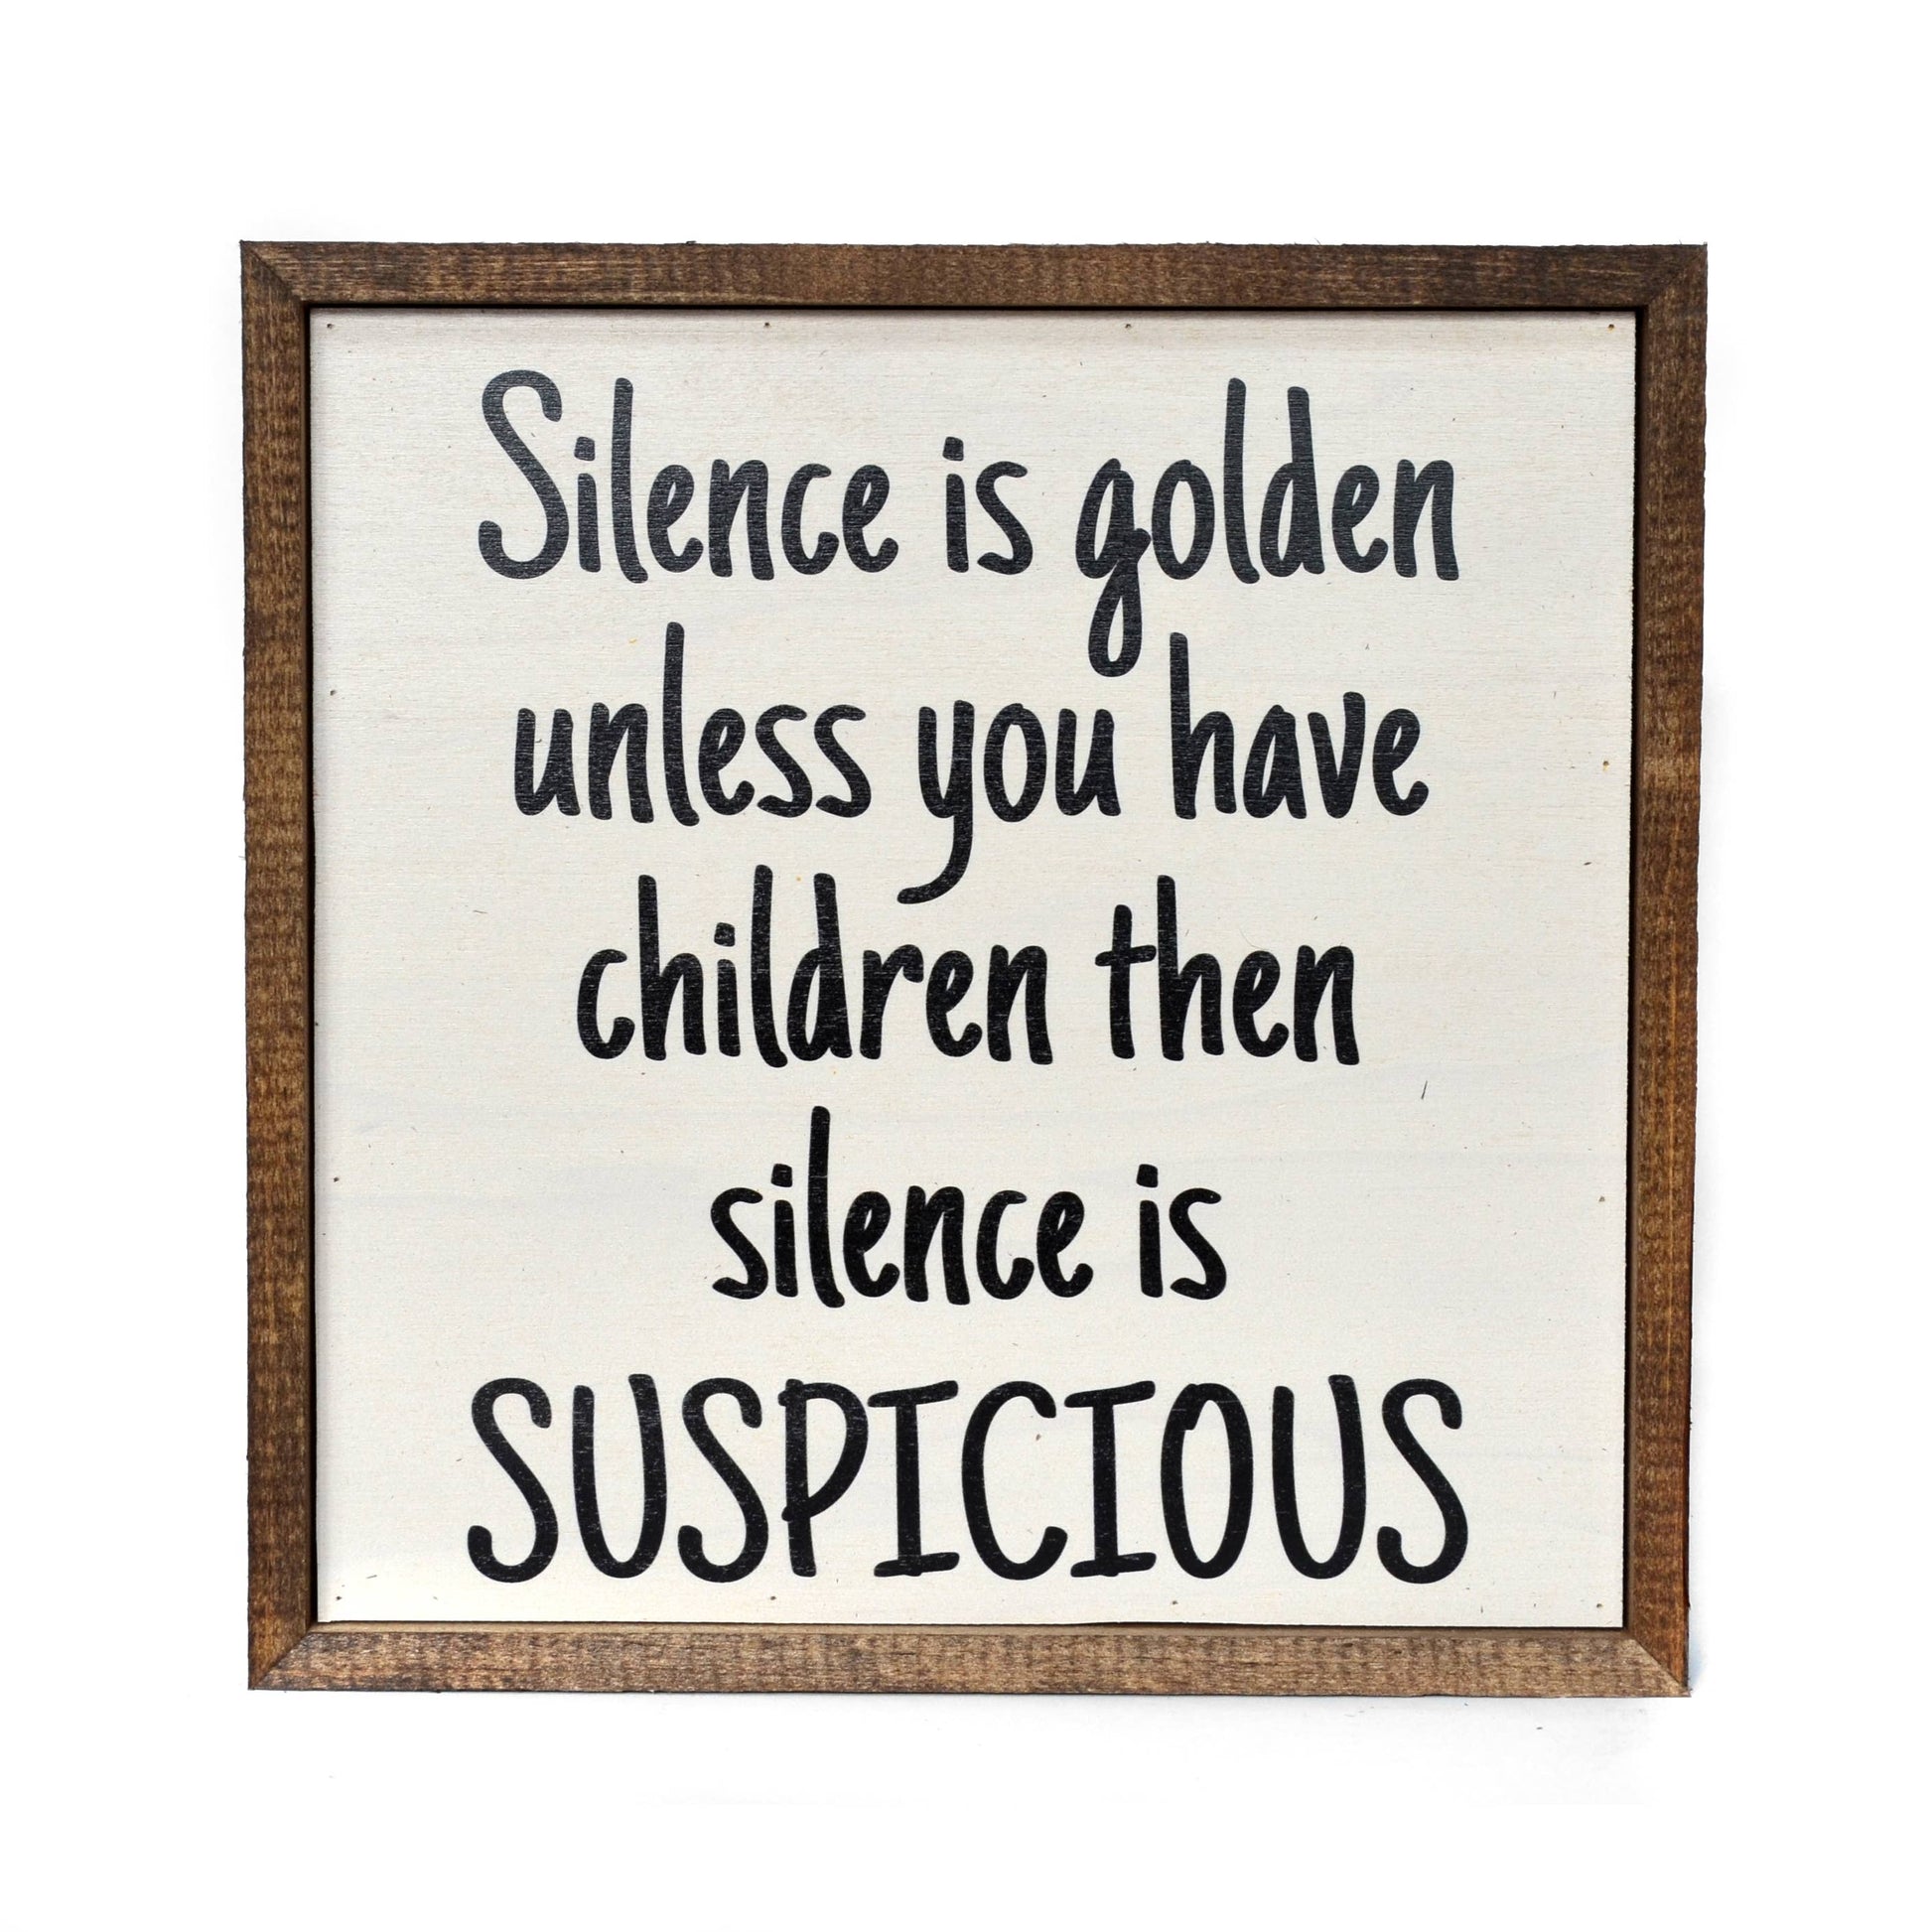 Silence is golden unless you have children 10x10 Wooden Sign - Hidden Gems Novelty